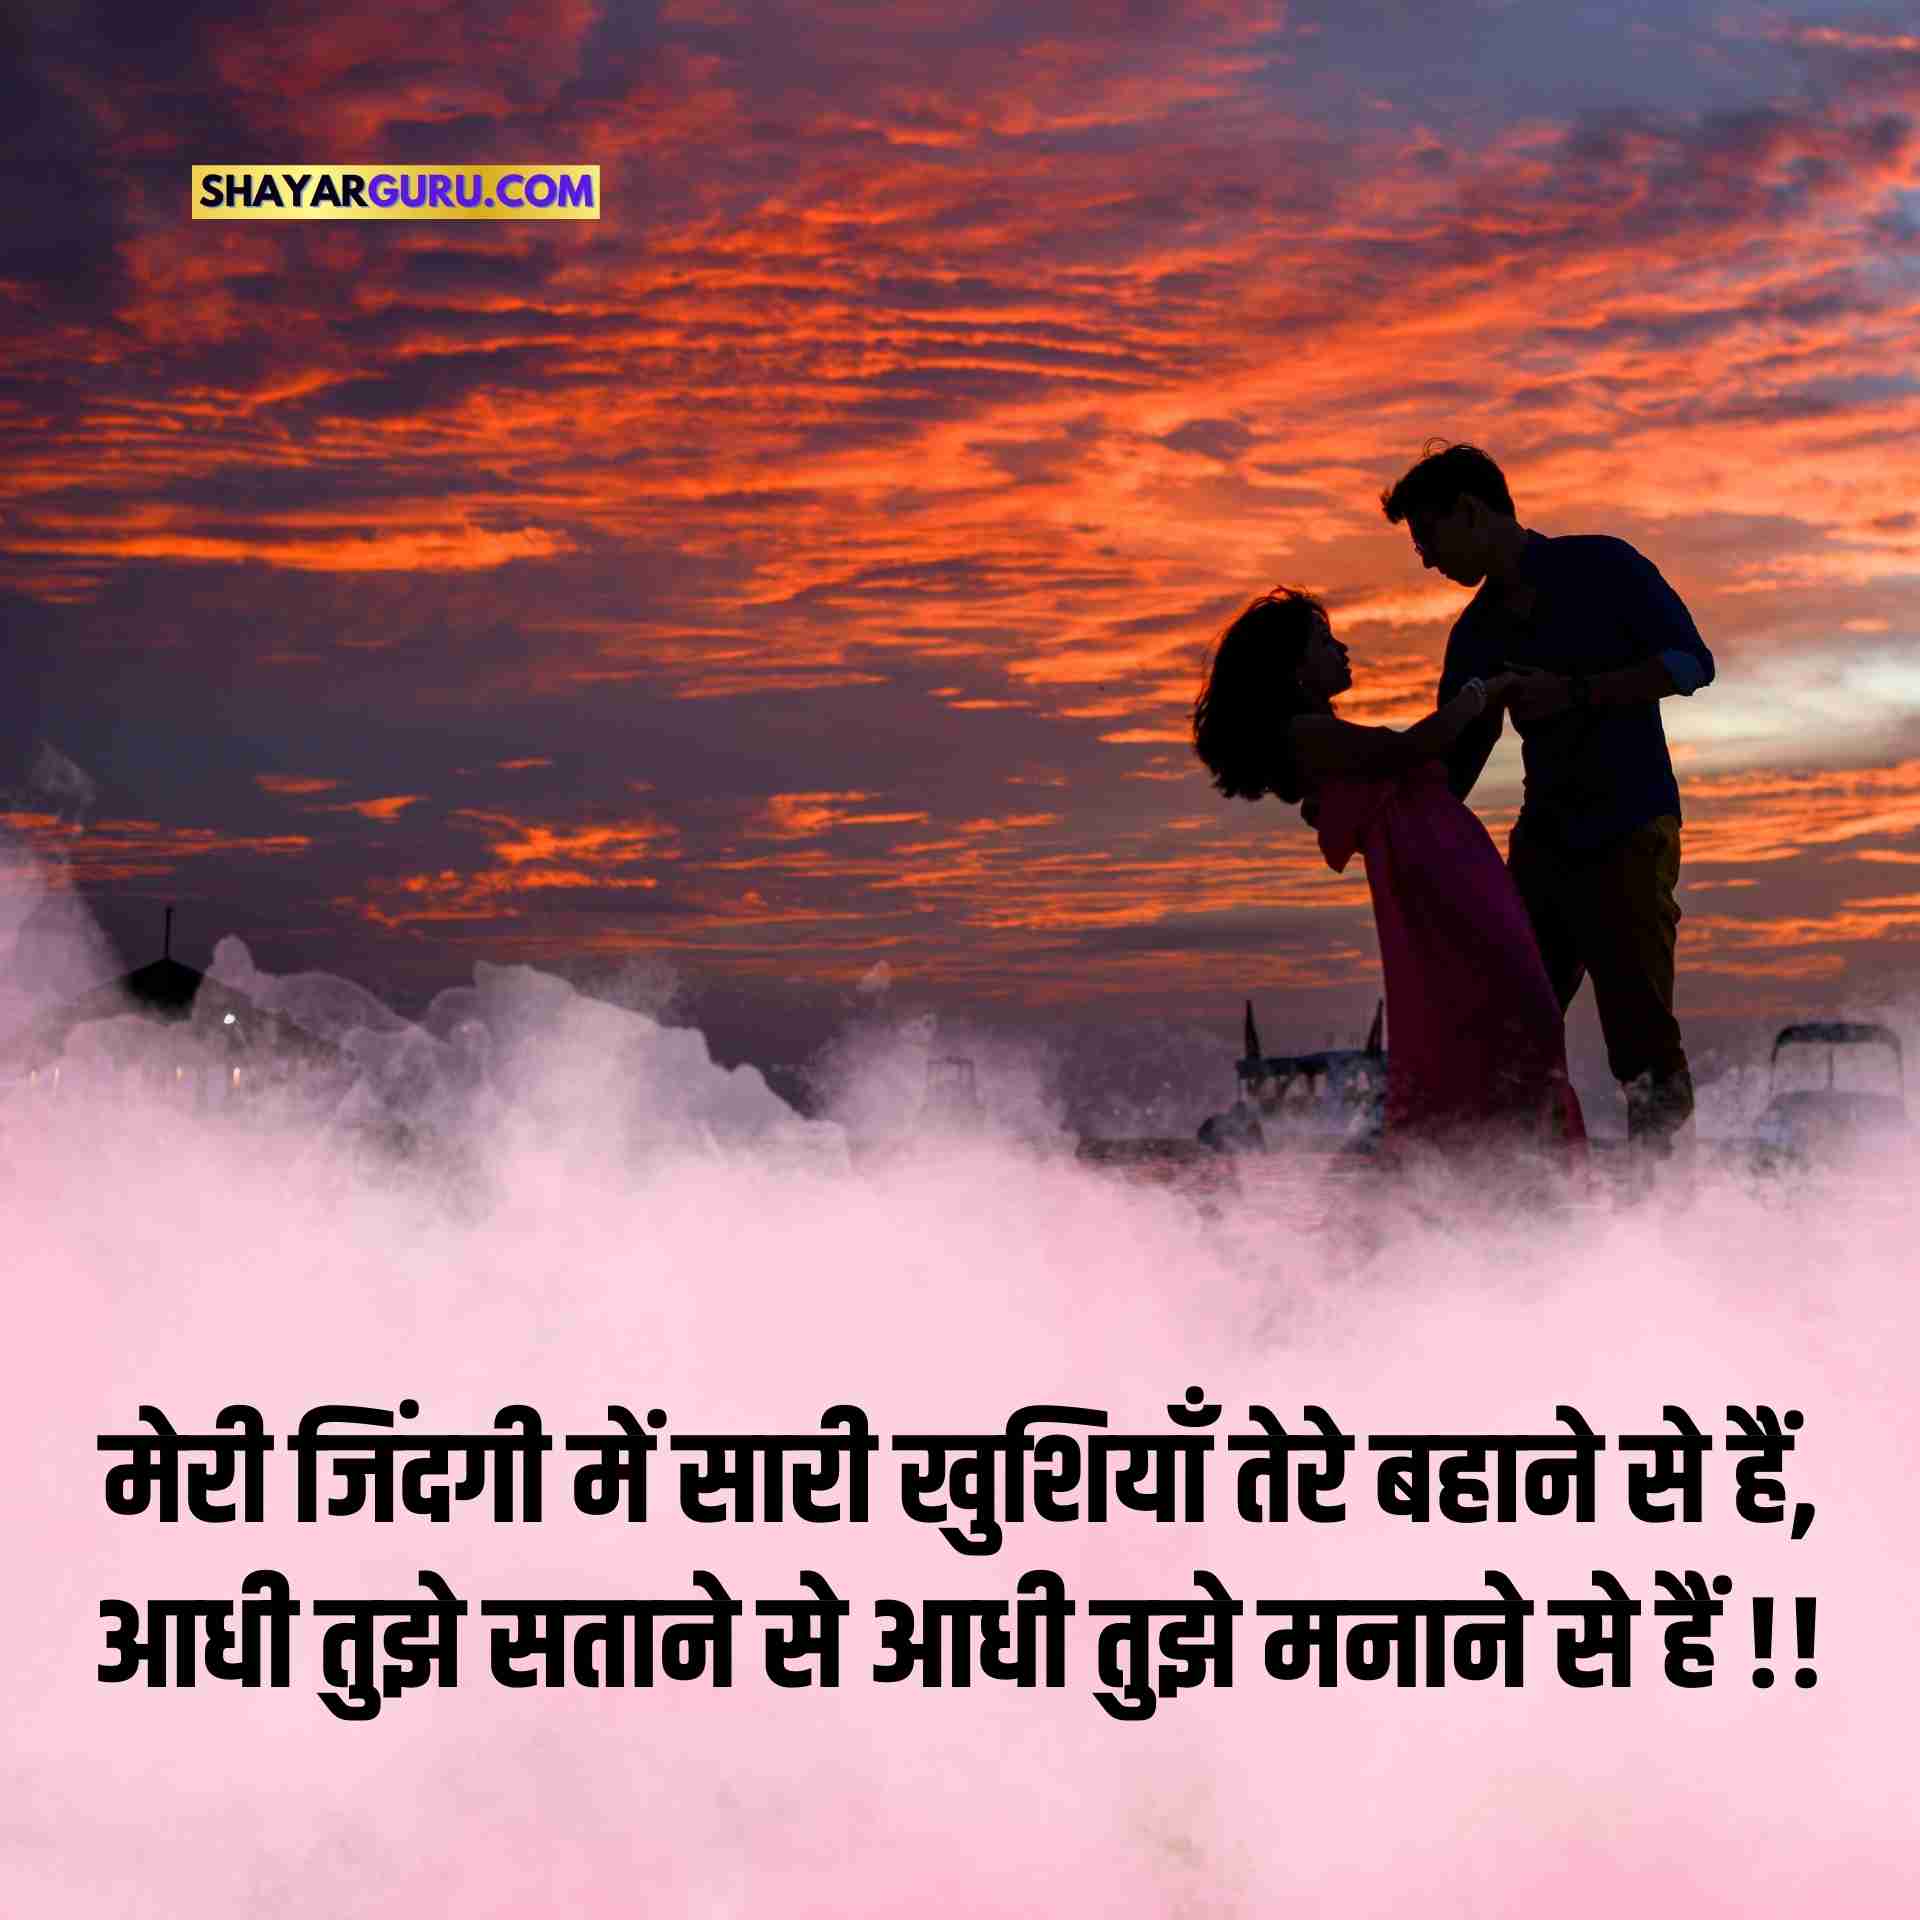 Love shayari image hindi